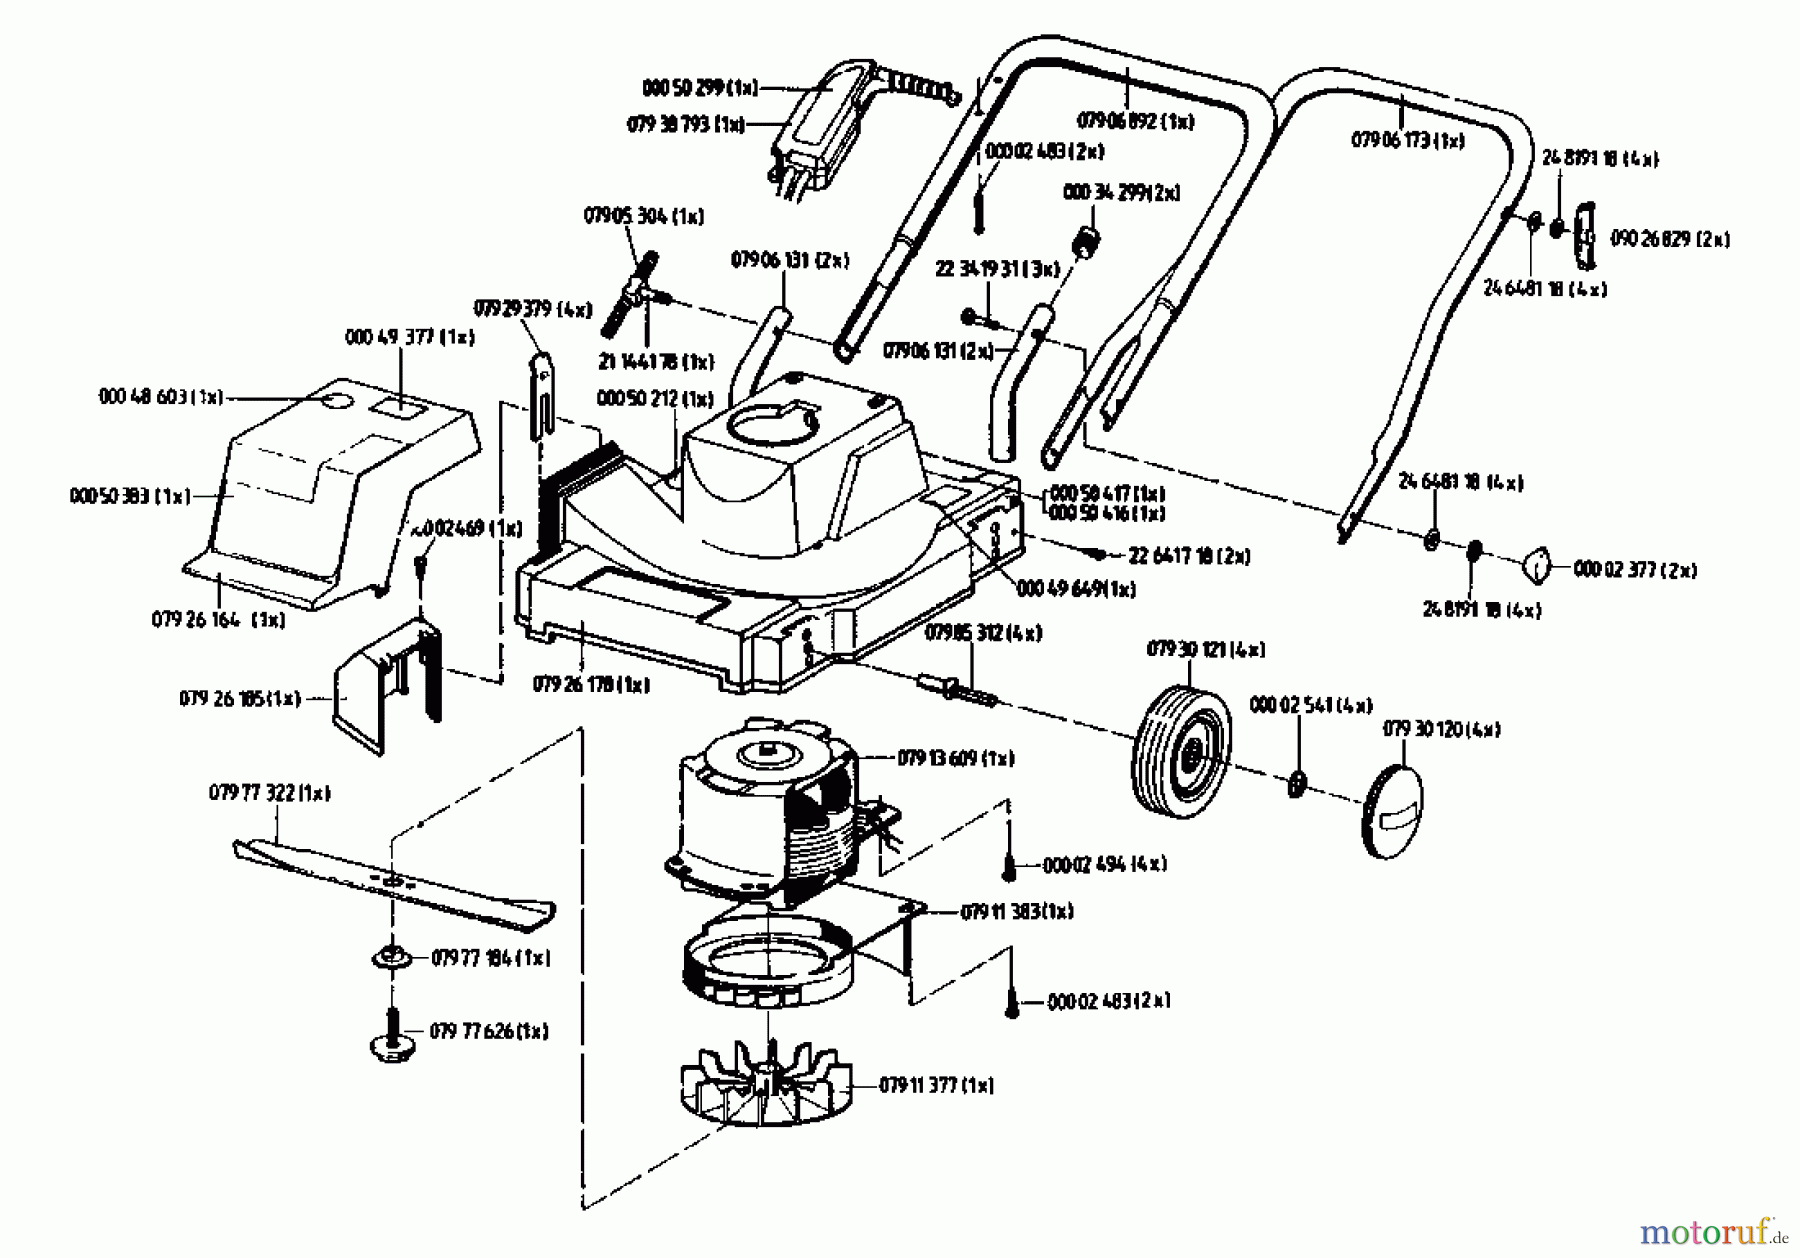  Golf Tondeuse électrique 130 SE 02804.01  (1993) Machine de base